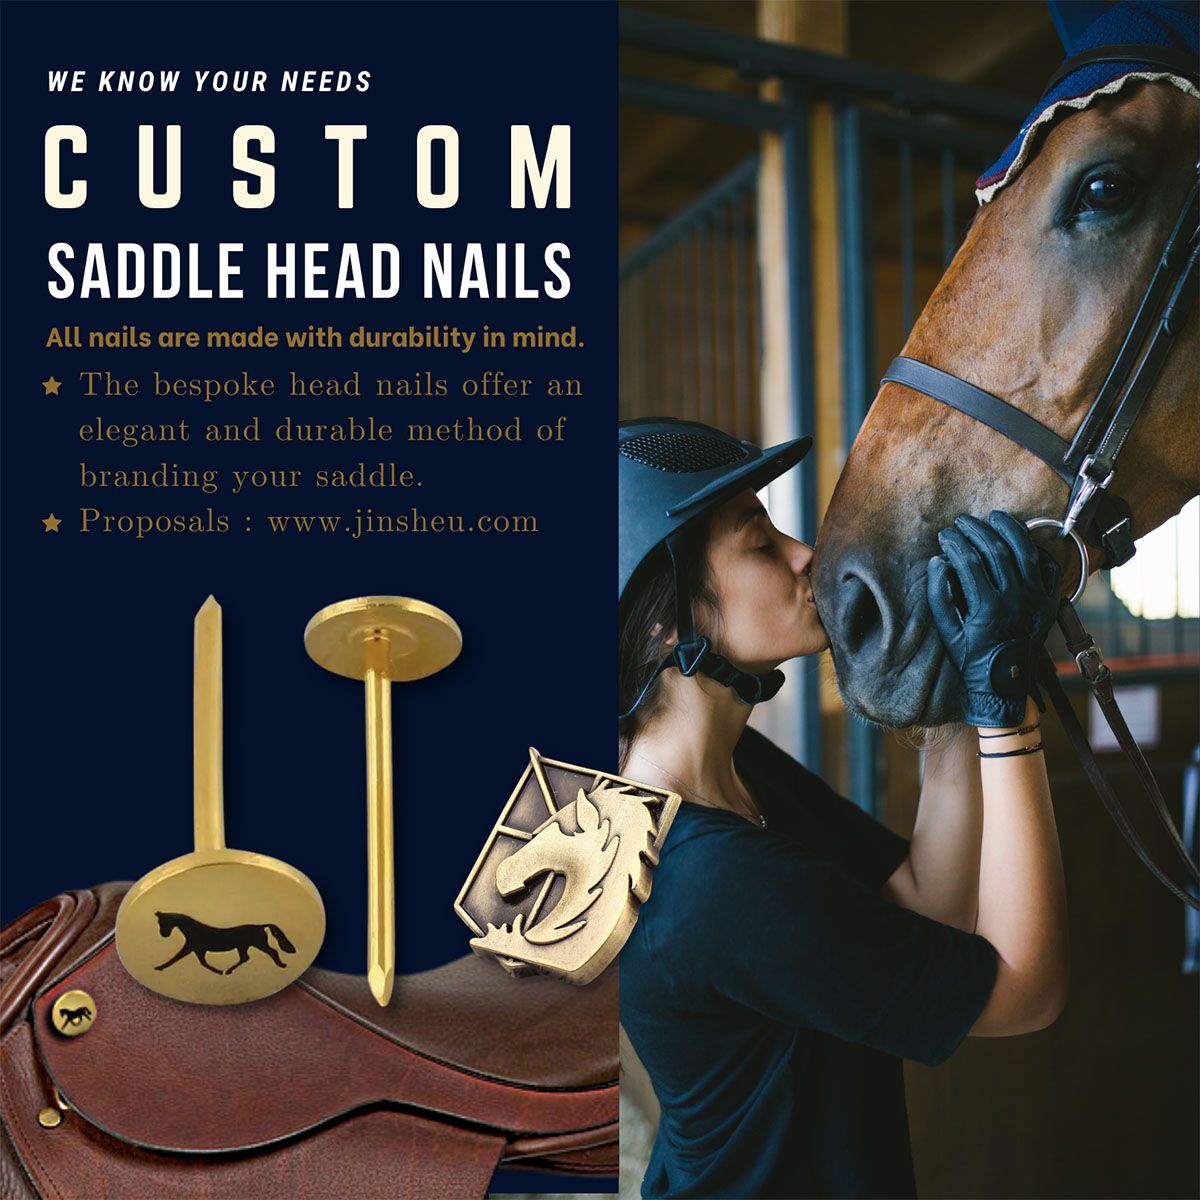 カスタム真鍮製の金属製の釘は、どんな馬好きにも印象を与えること間違いなしです。